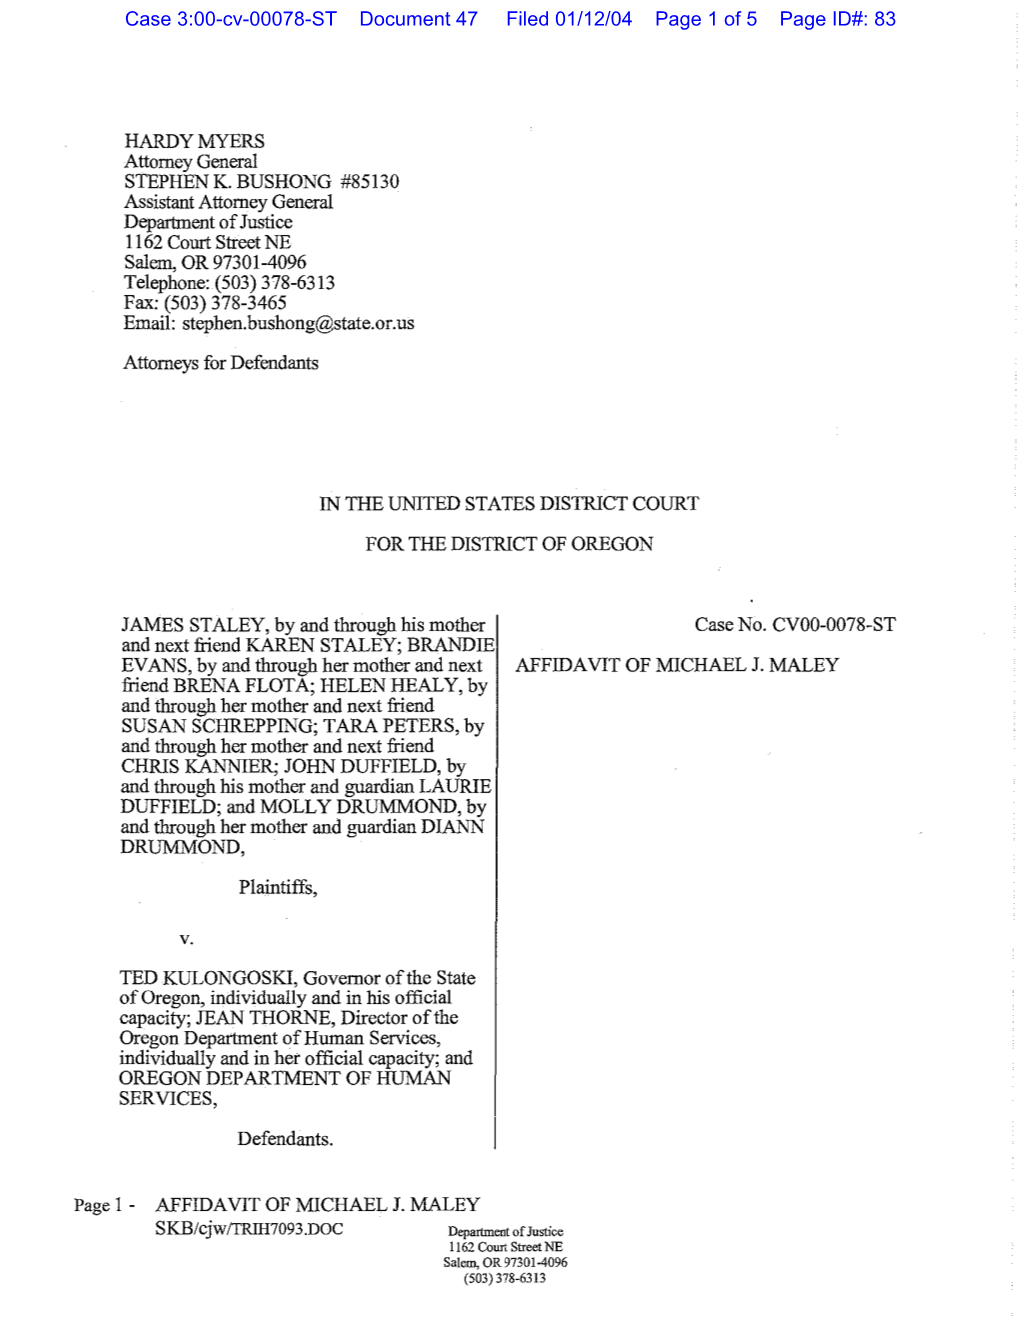 Staley V. Kulongoski USDC CVOO-0078-ST Affidavit of Michael 1